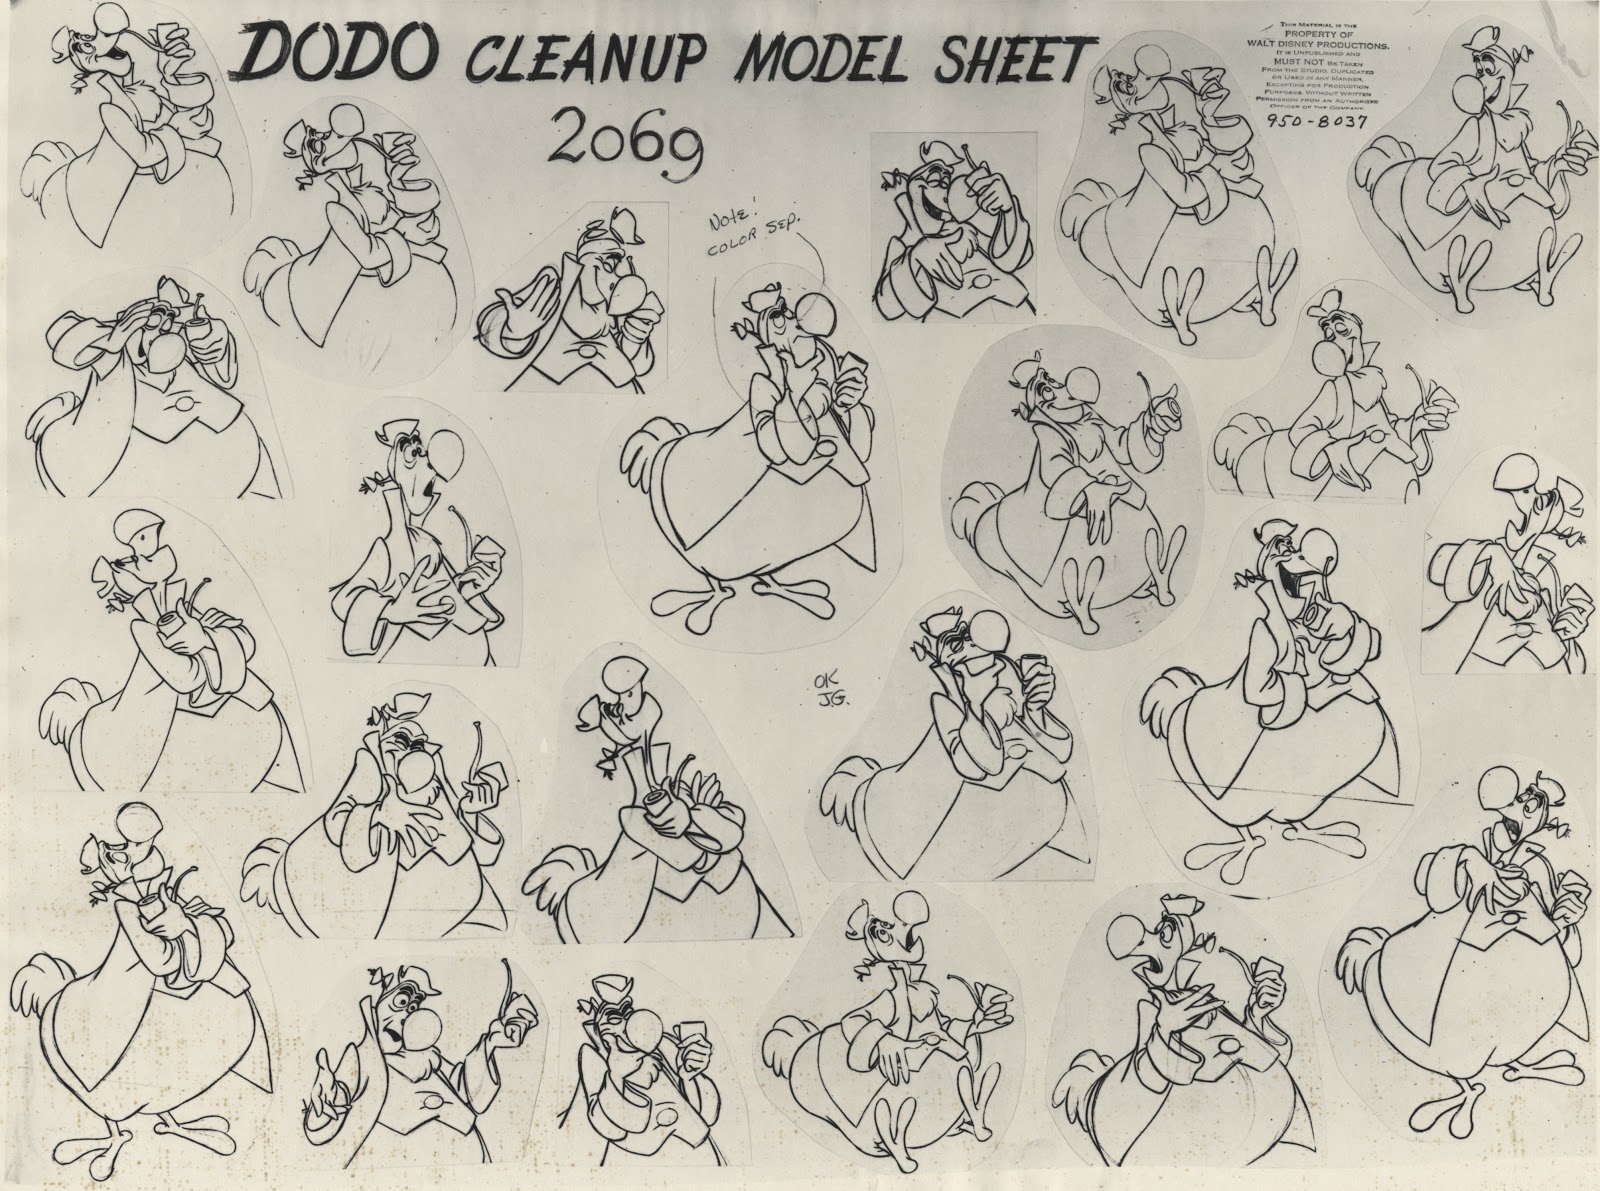 Deja View: The Dodo